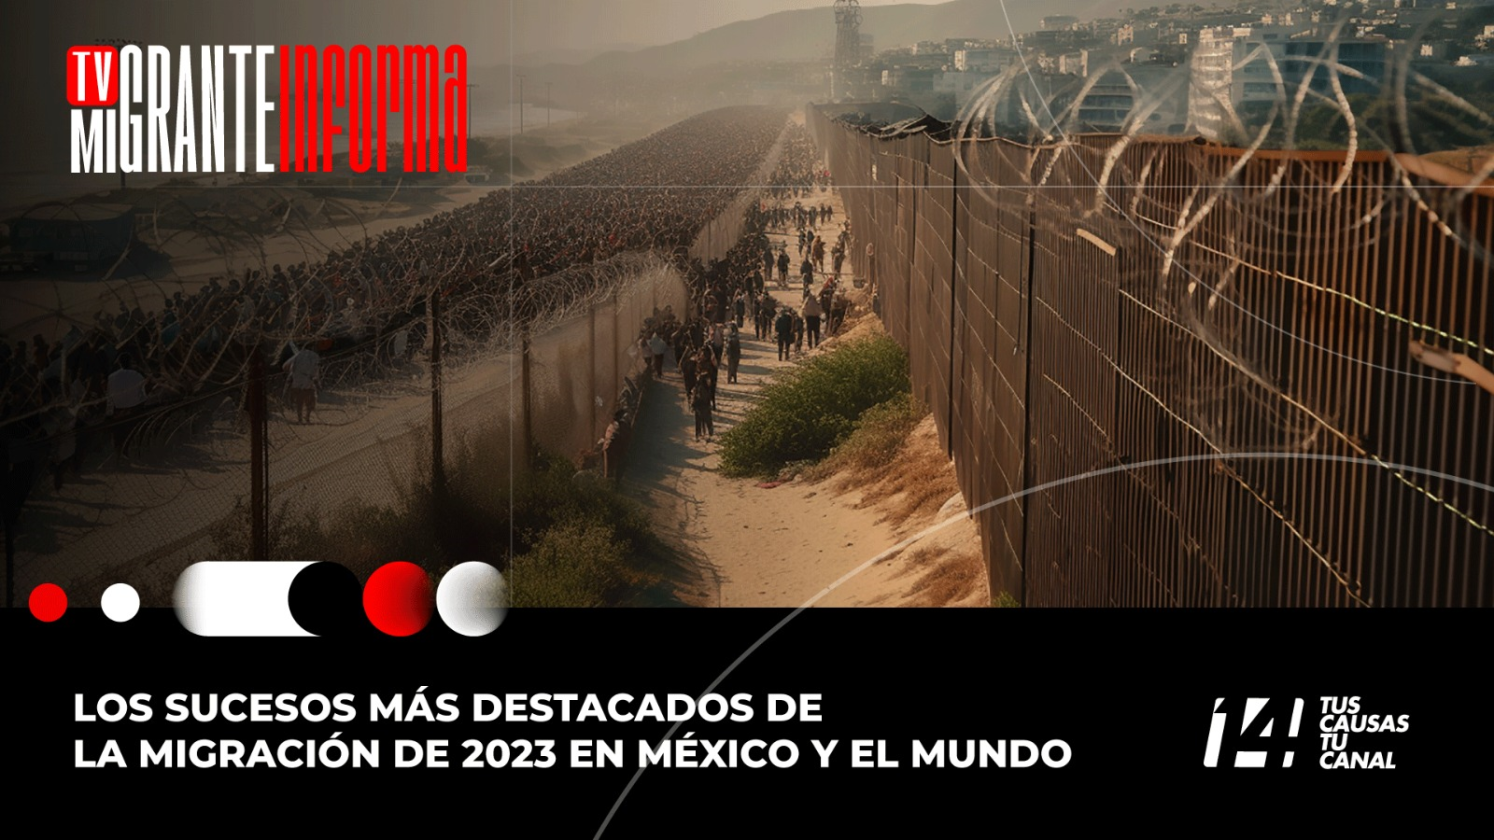 Los sucesos más destacados de la migración de 2023 en México y el mundo.